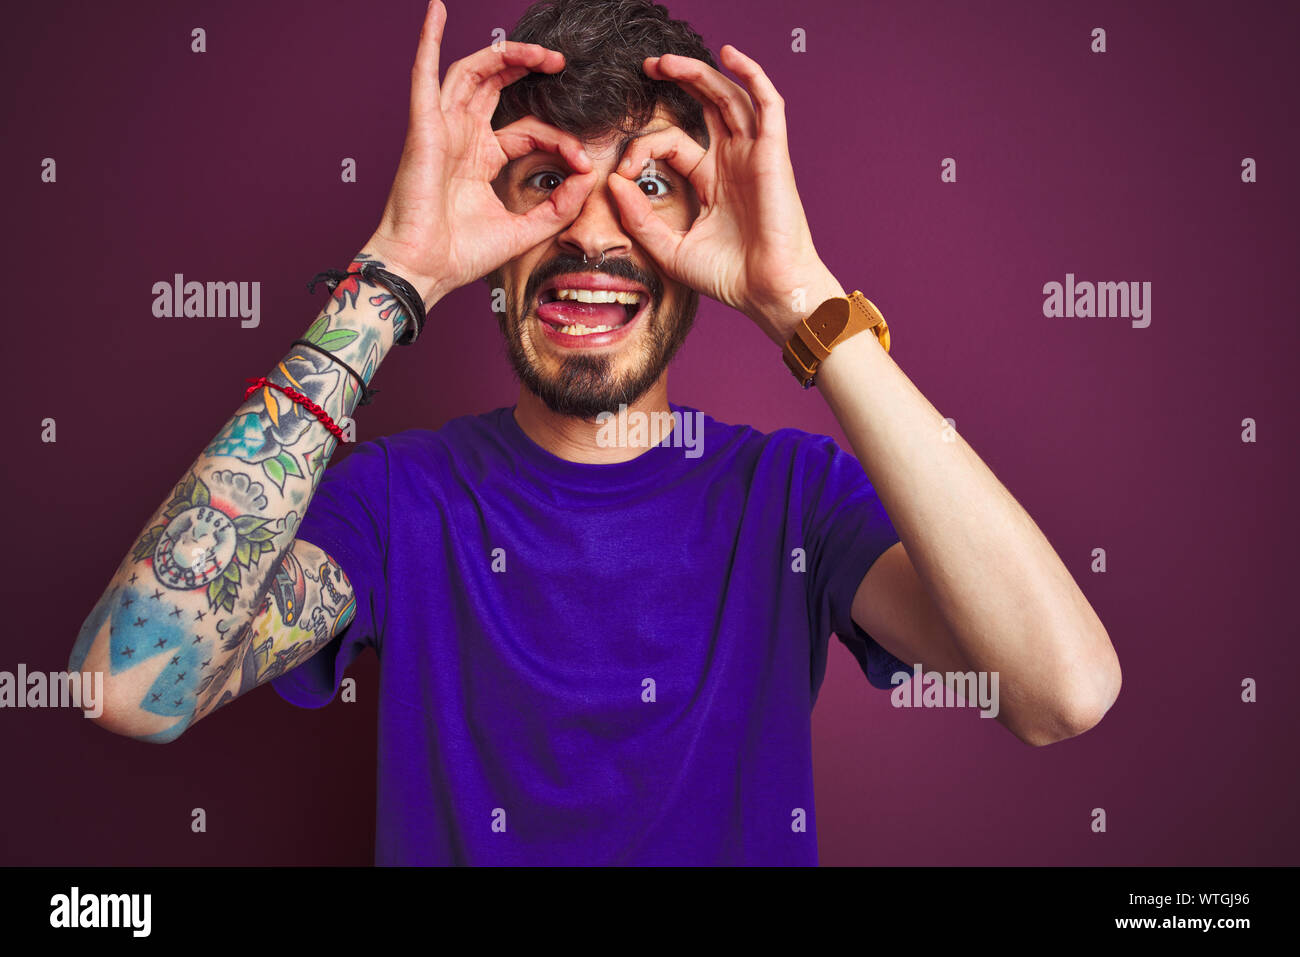 Junger Mann mit Tattoo tragende t-shirt stehend über isolierte lila  Hintergrund tun ok Geste wie Fernglas Zunge heraus, Augen, thro  Stockfotografie - Alamy